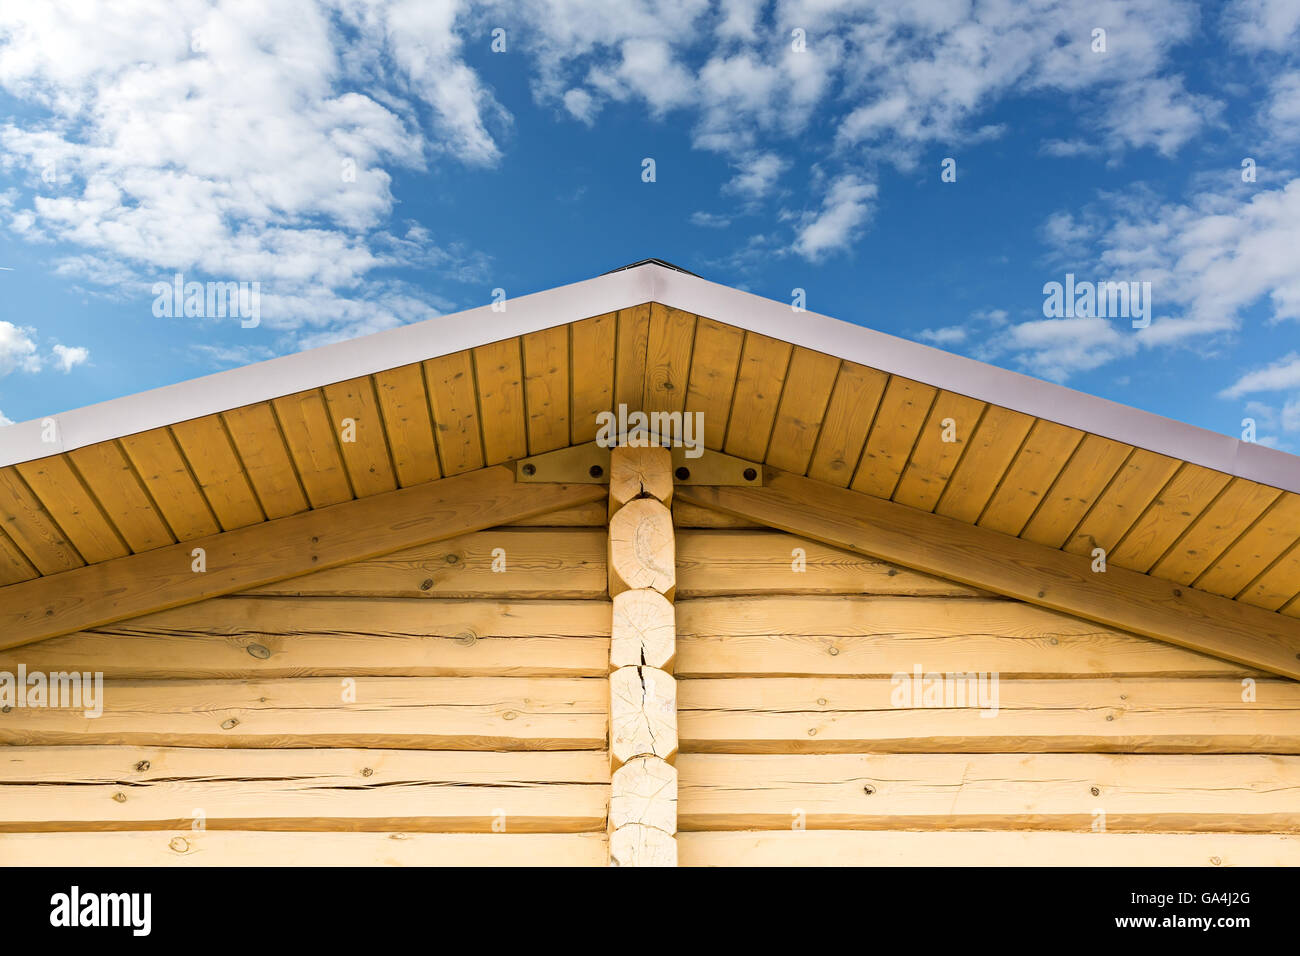 Toit en bois avec gable log mur contre ciel nuageux Banque D'Images